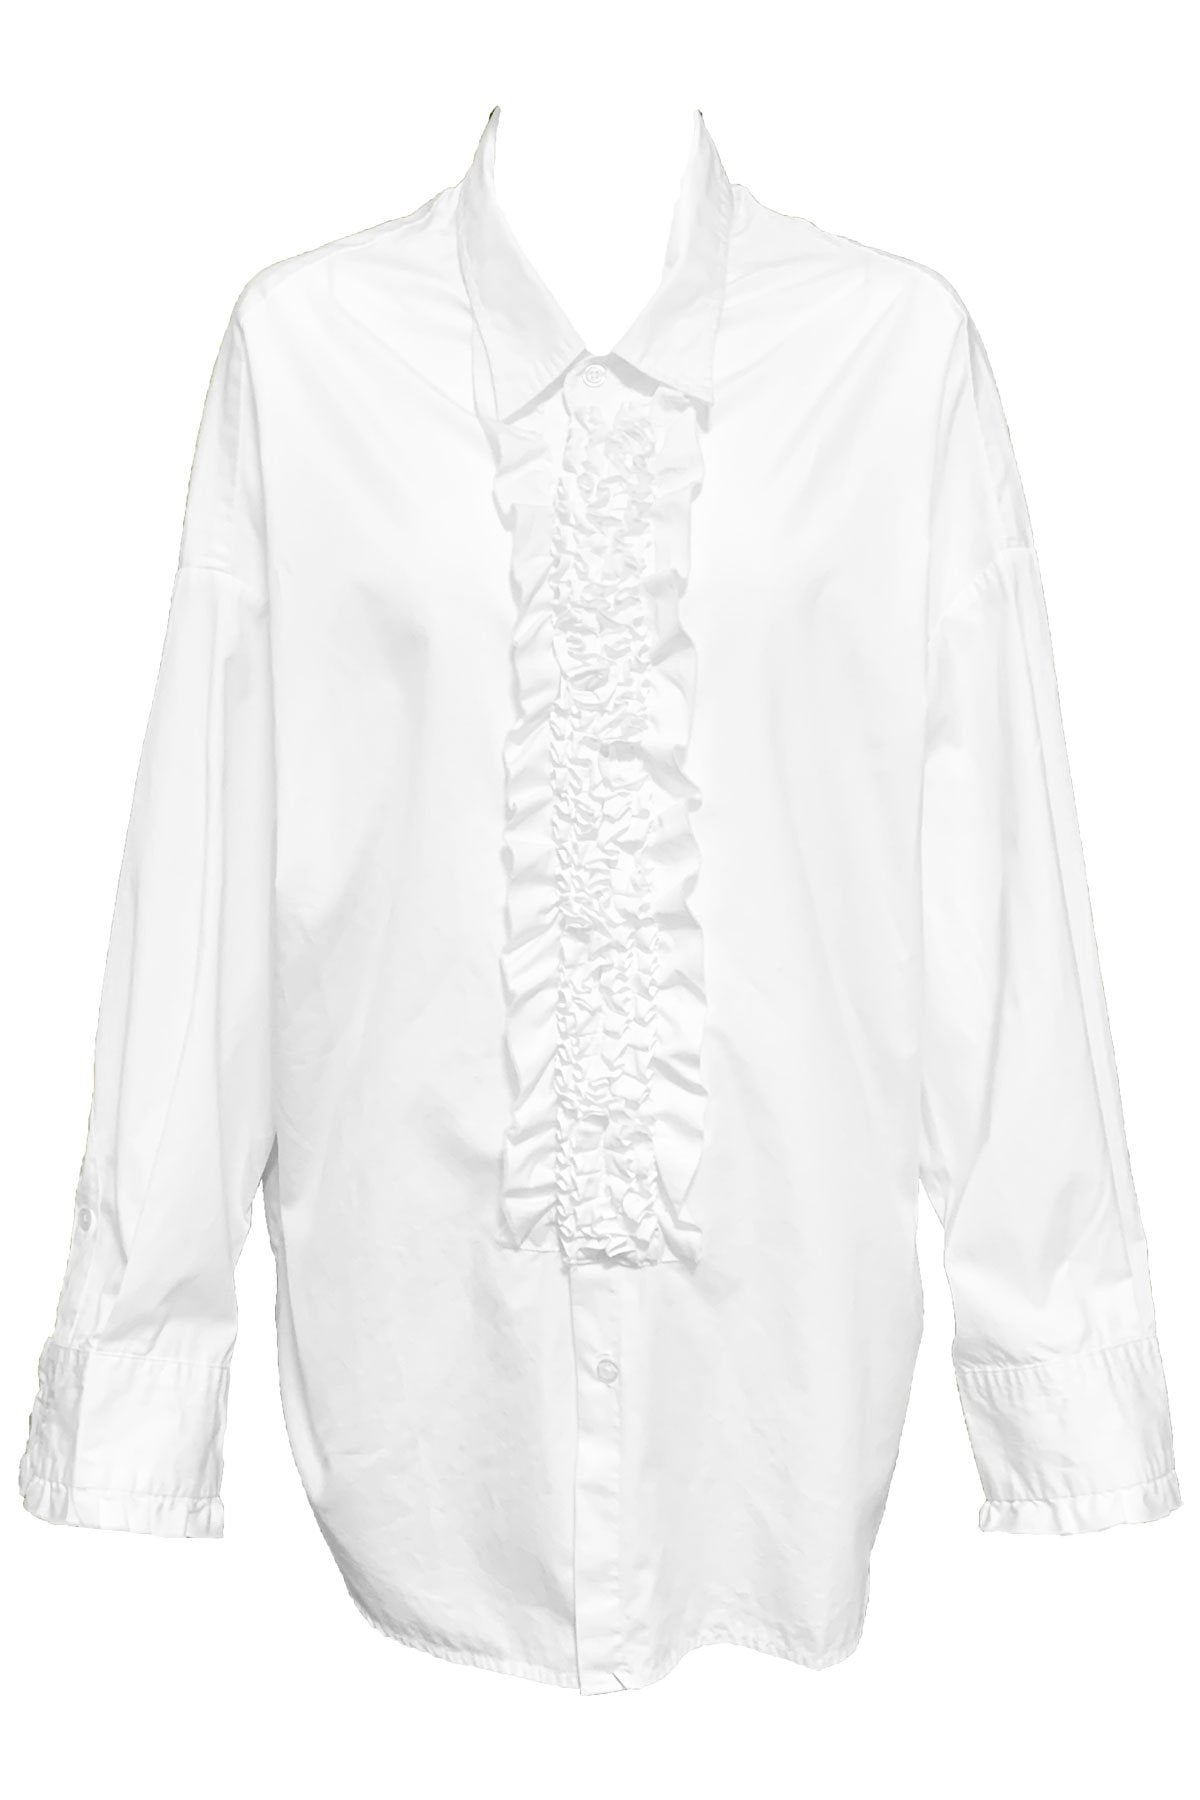 Drop Neck Tuxedo Shirt White - shop-olivia.com